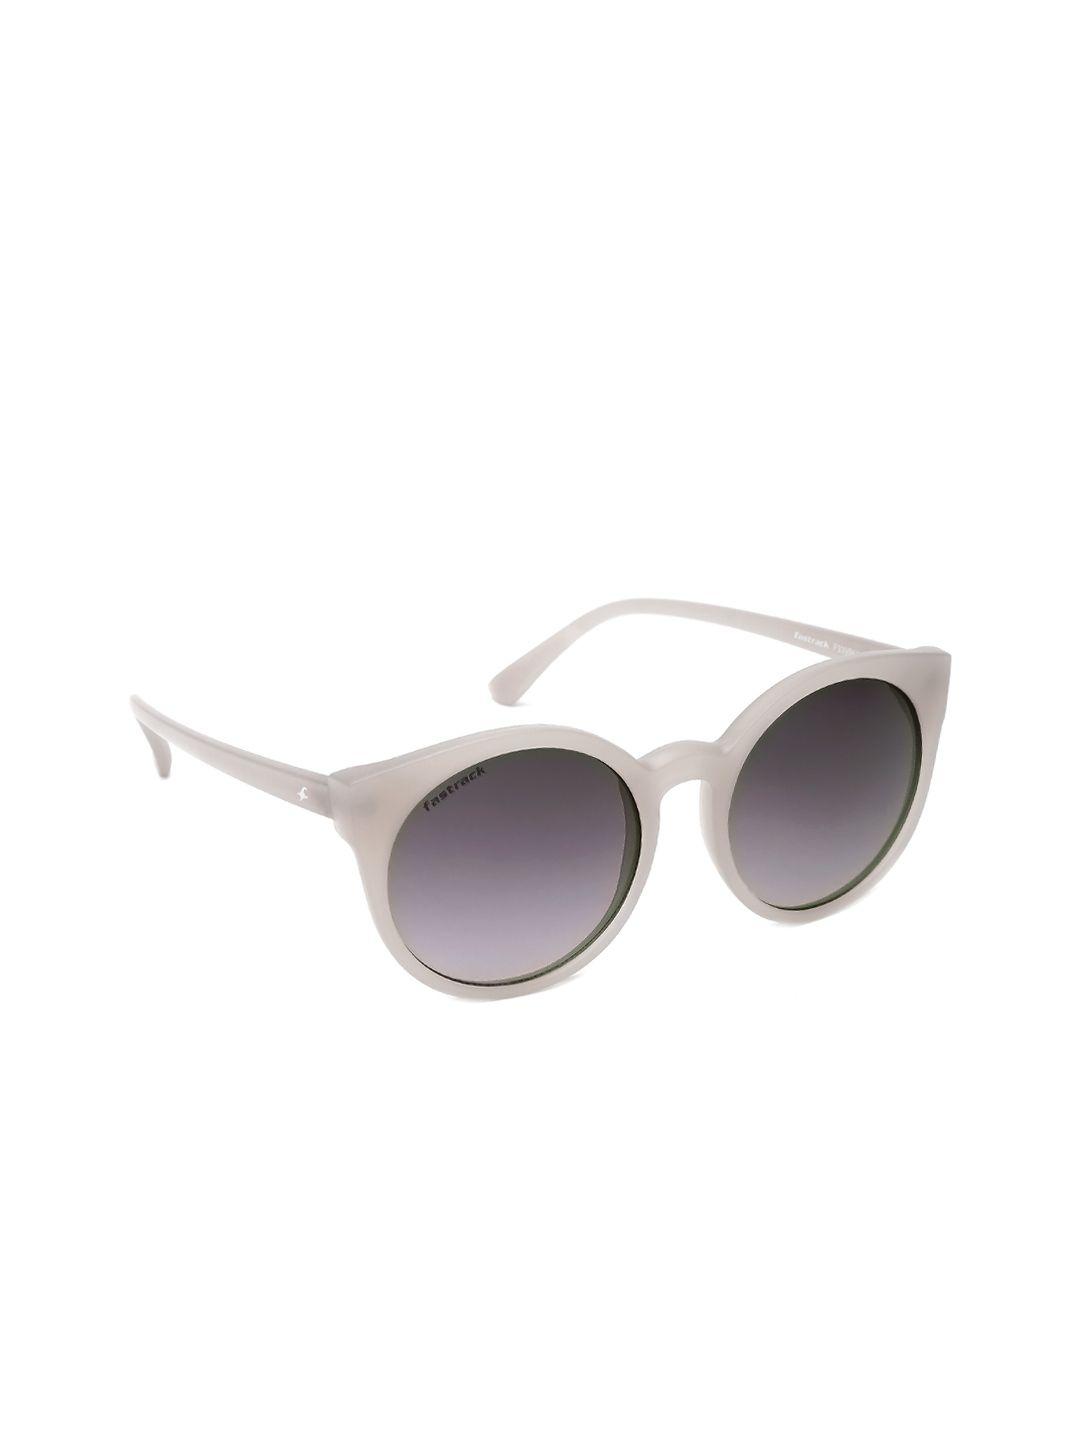 fastrack-women-round-sunglasses-p339bk2